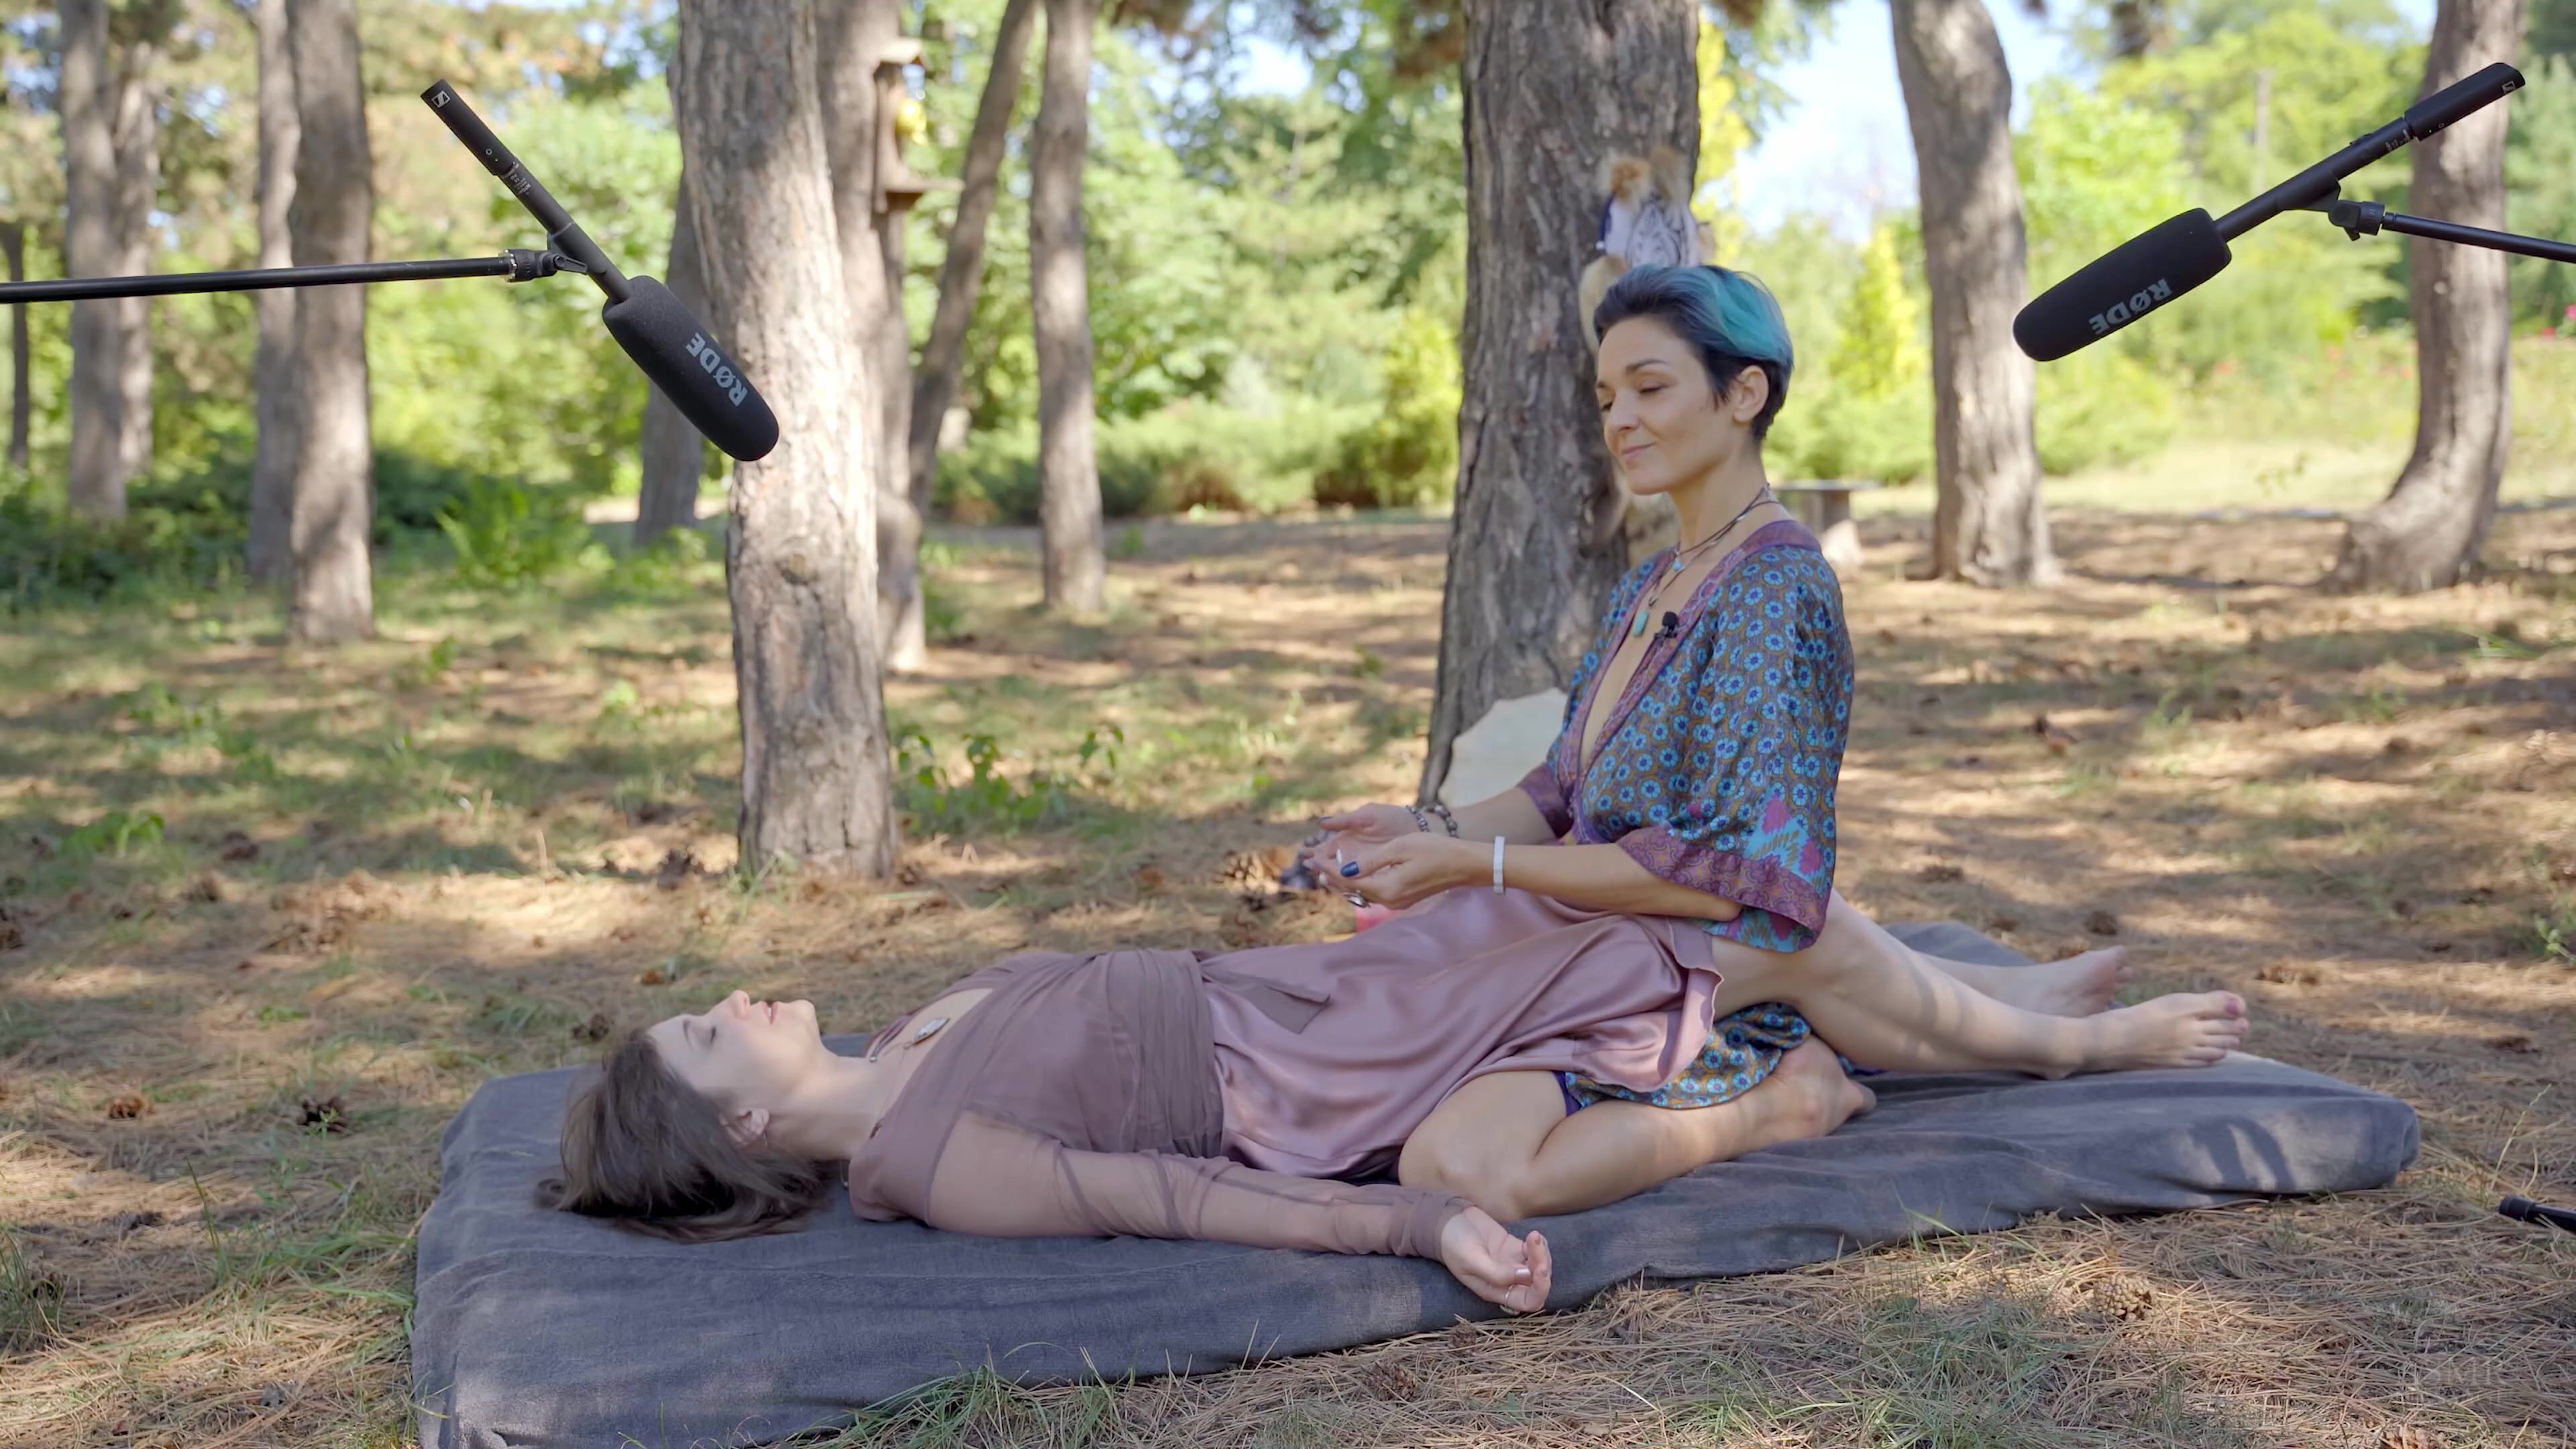 Back Massage by Taya on Central Park